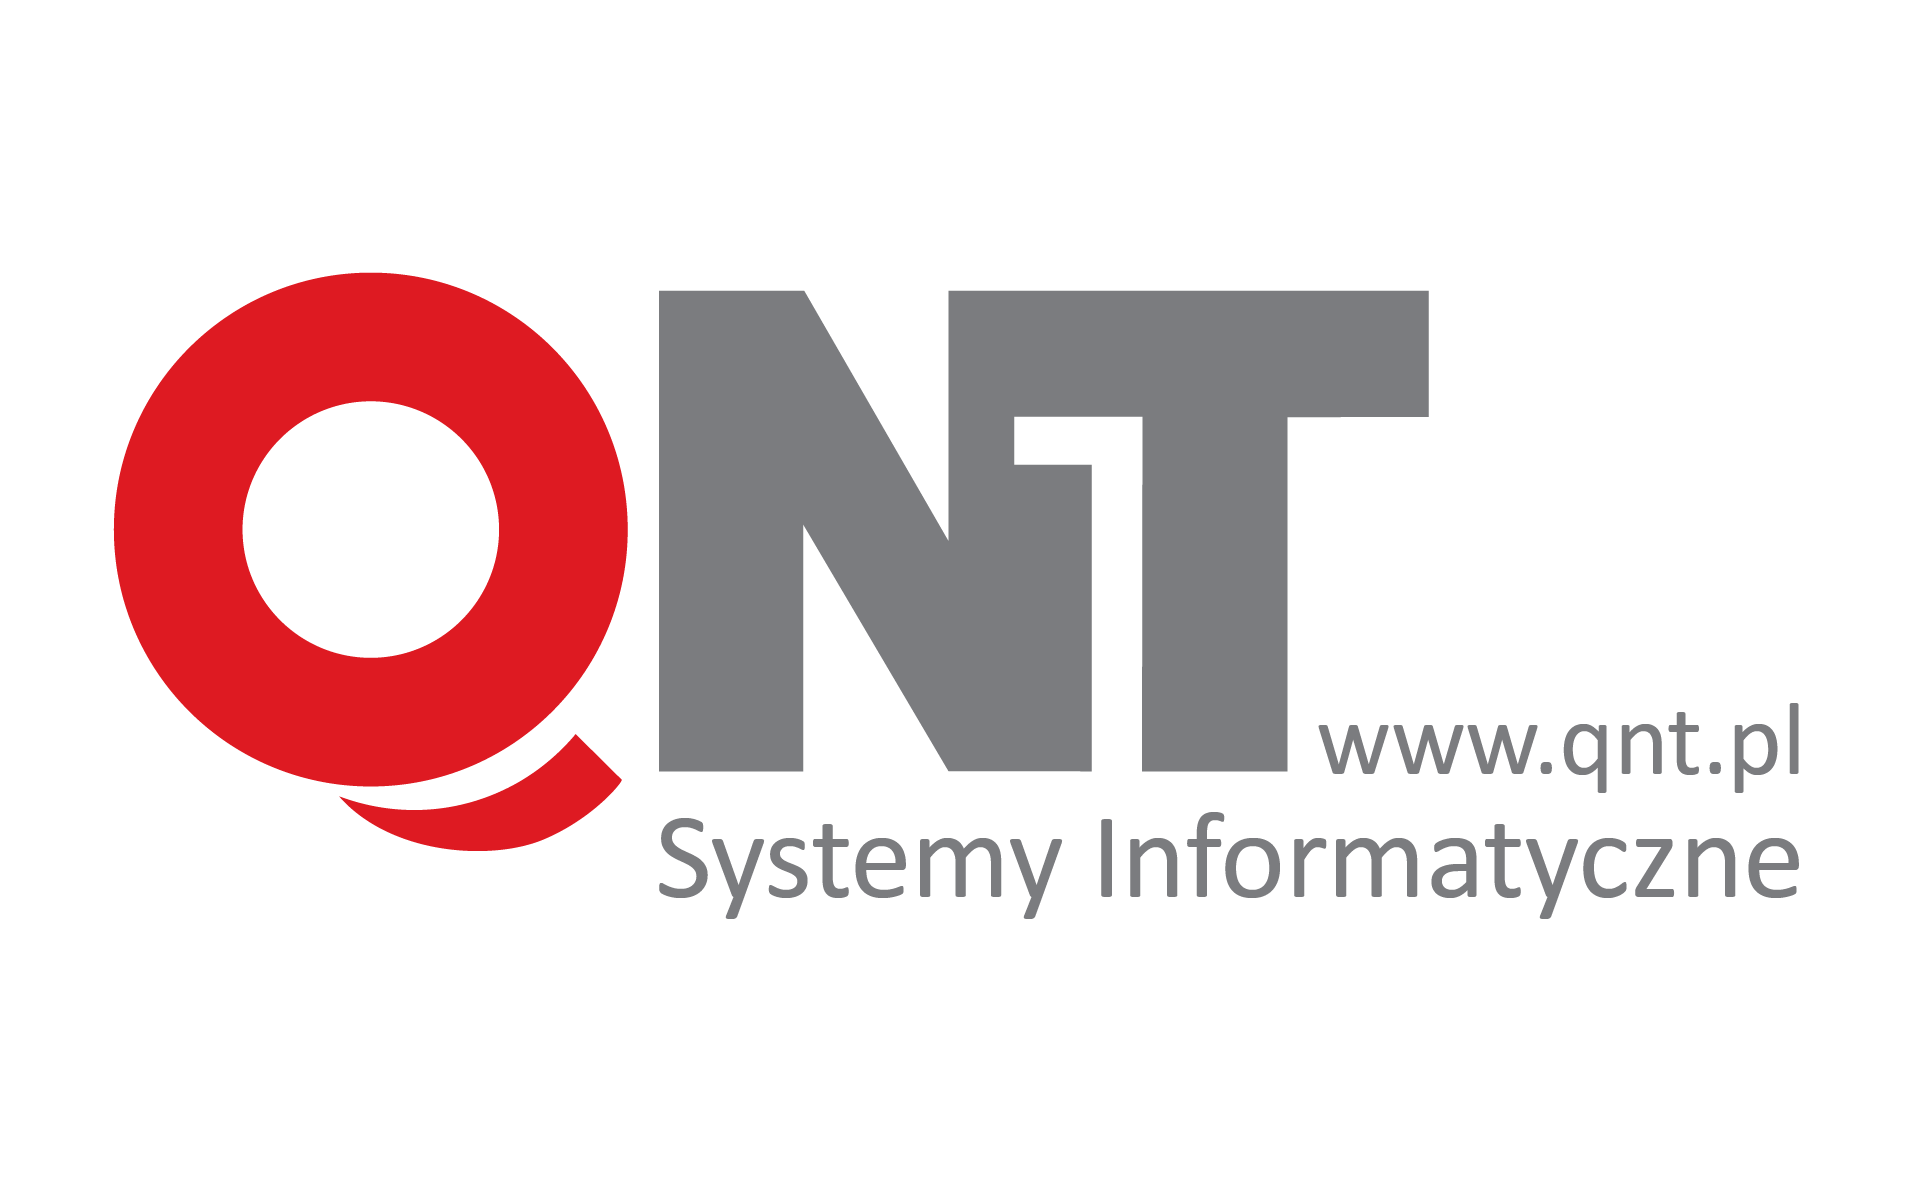 QNT Systemy Informatyczne Sp. z o.o.